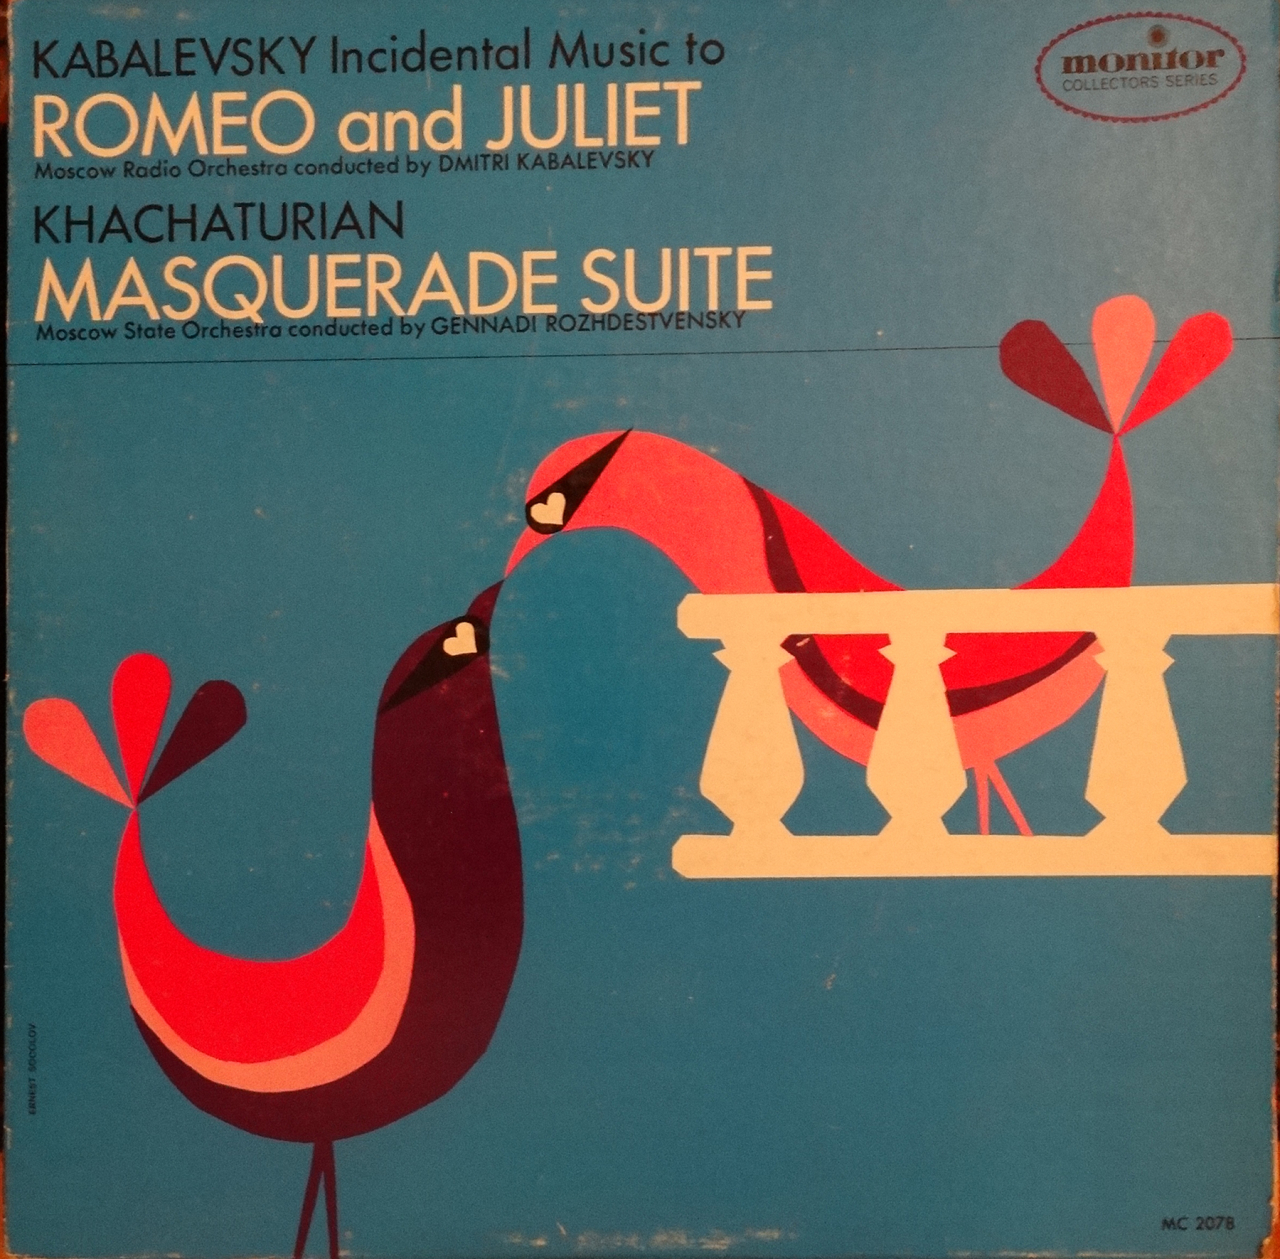 Ձայնապնակ. Ա. Խաչատրյանի Սյուիտը Լերմոնտովի «Դիմակահանդես» դրամայի համար գրված երաժշտությունից և Դմ.Կաբալևսկու «Ռոմեո և Ջուլիետ» դրամայի համար գրված երաժշտությունը